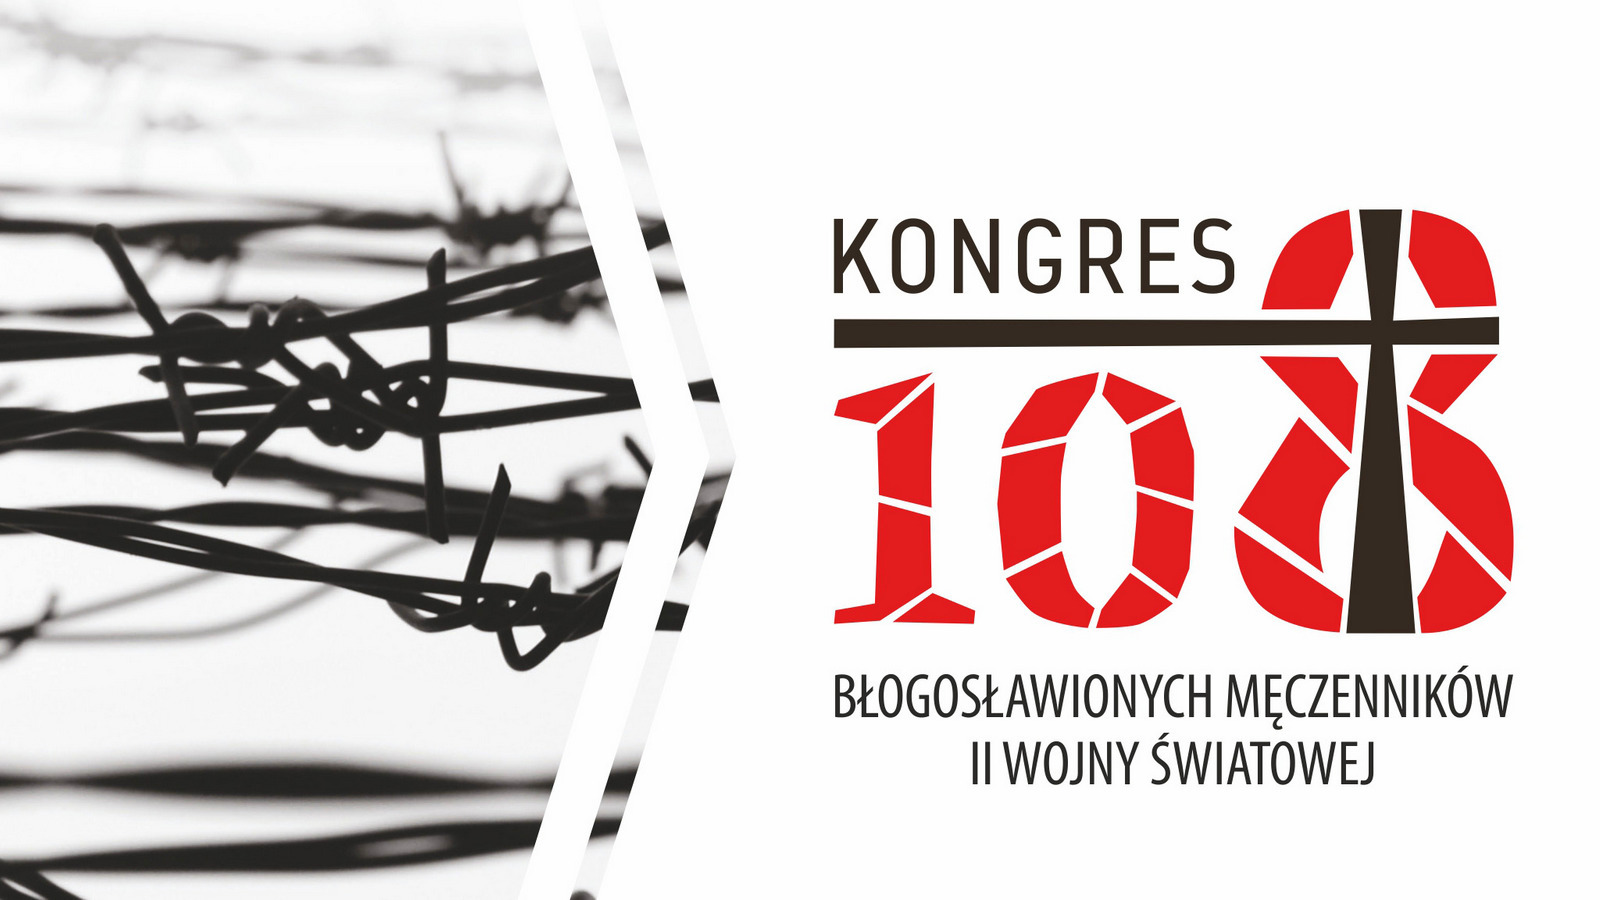 Kongres 108 Błogosławionych męczenników II wojny światowej